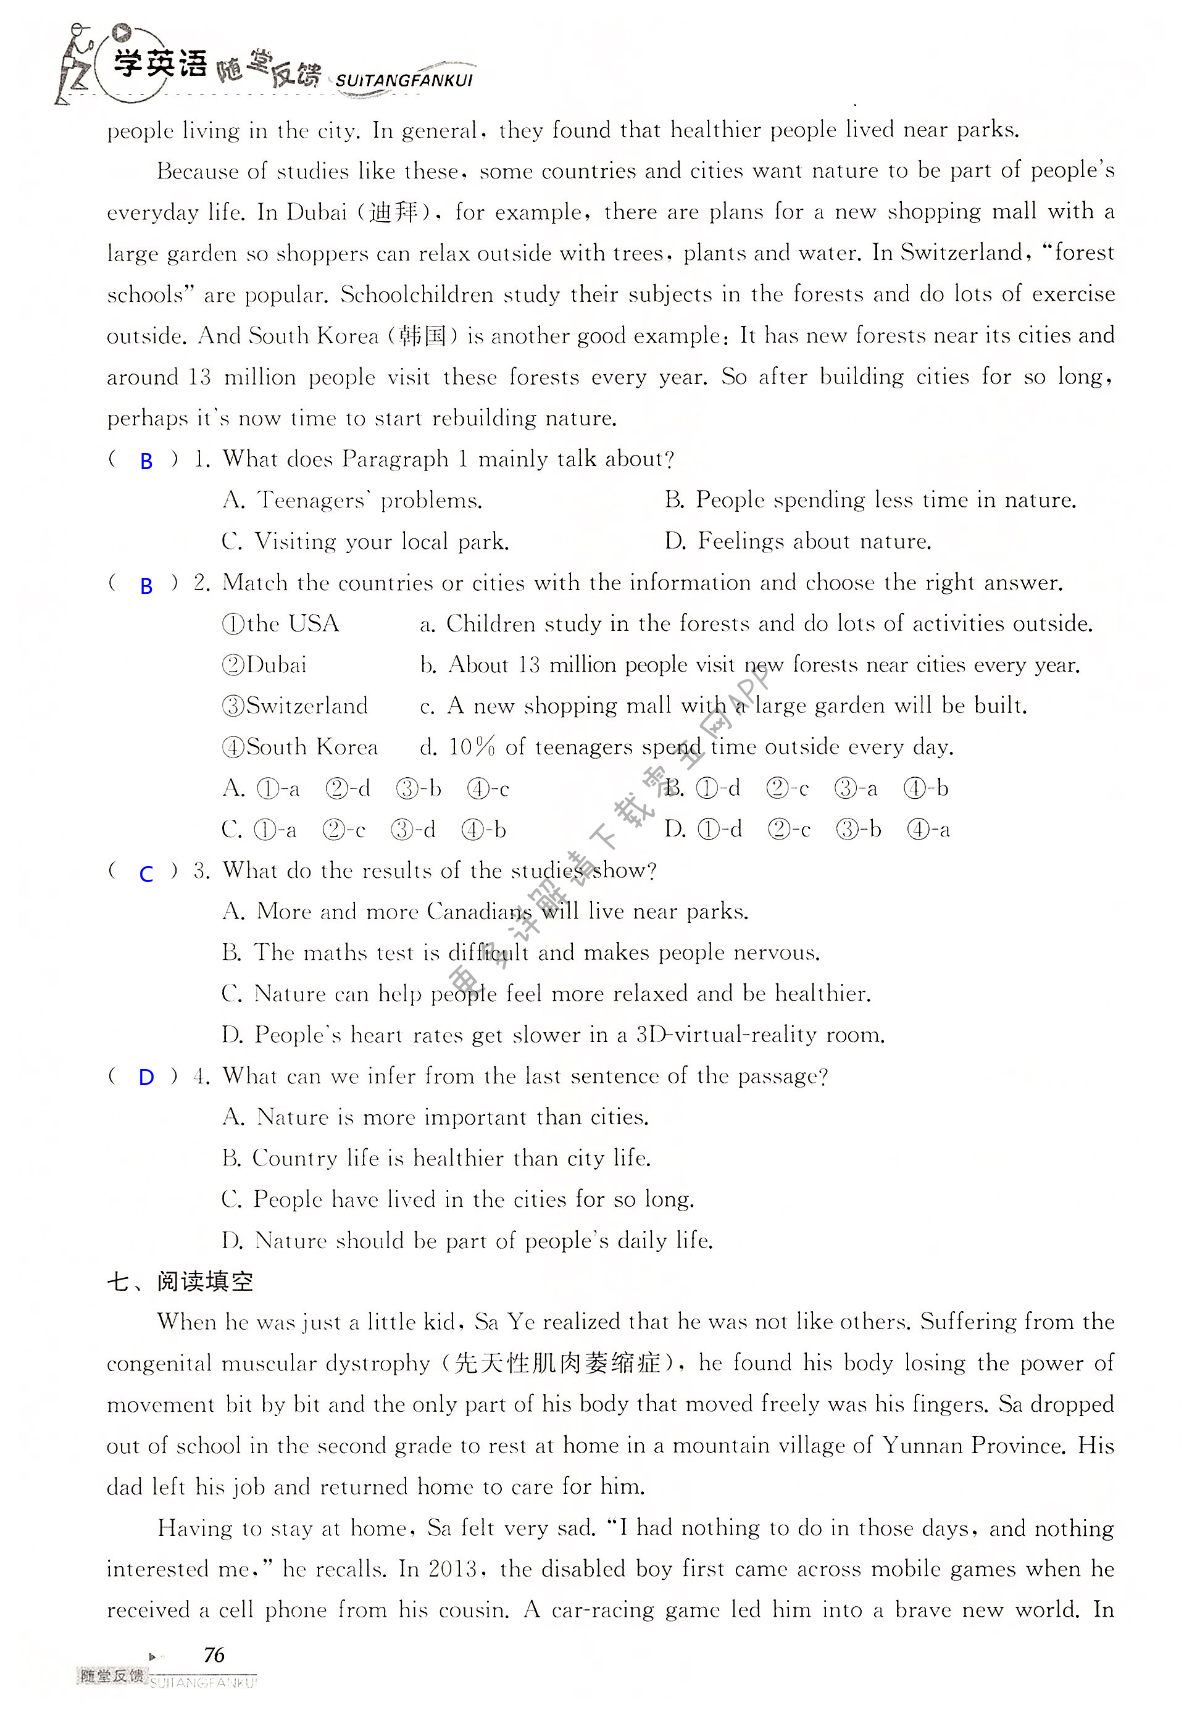 中考英语总复习 Unit 4 of 9A - 第76页